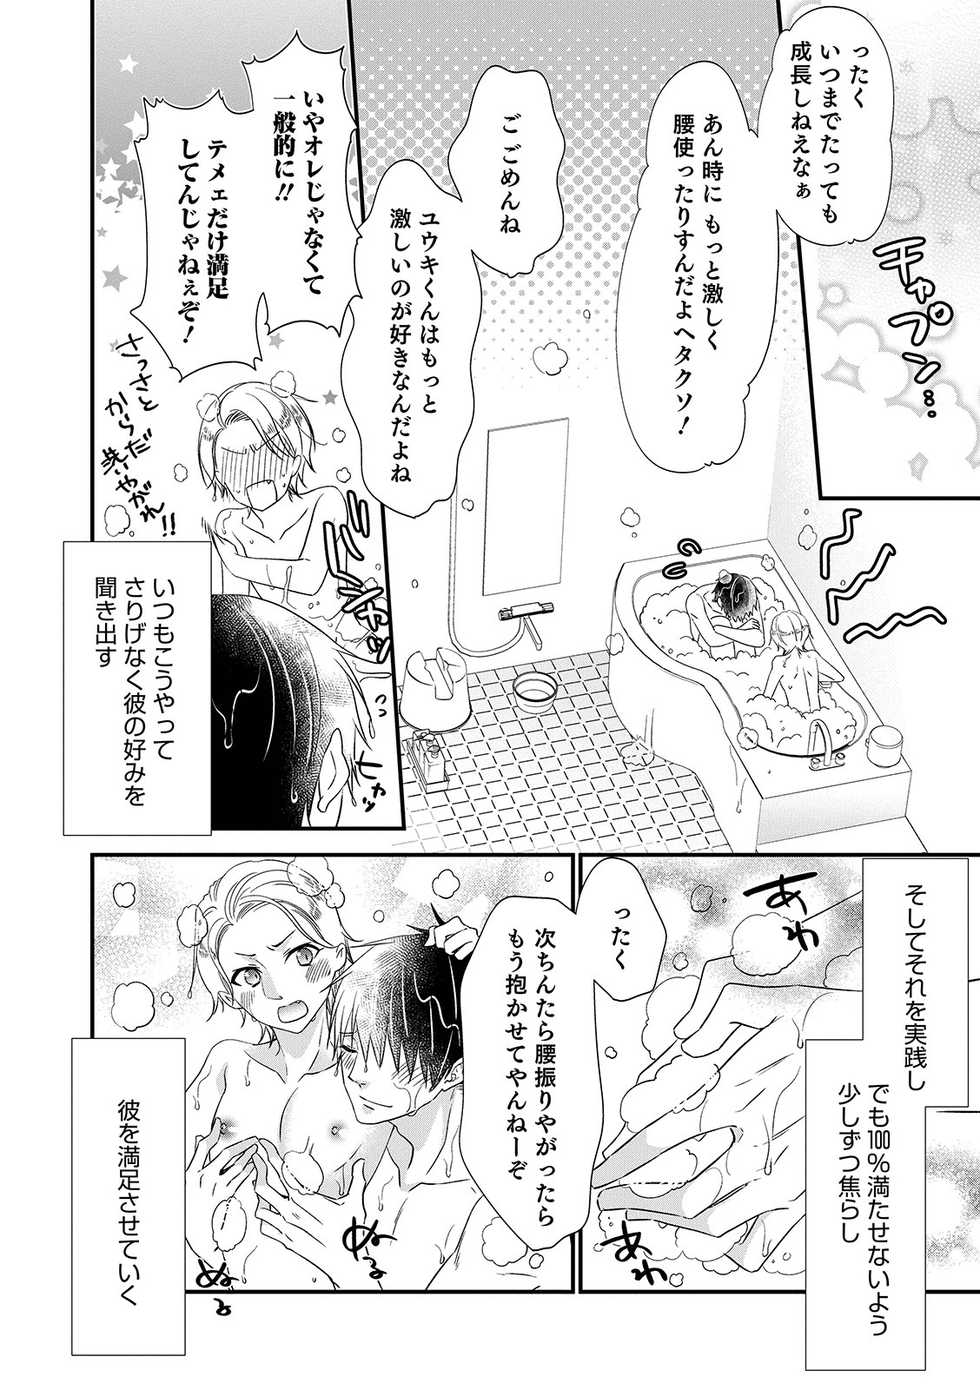 [Anthology] Otokonoko Heaven's Door 9 [Digital] - Page 28